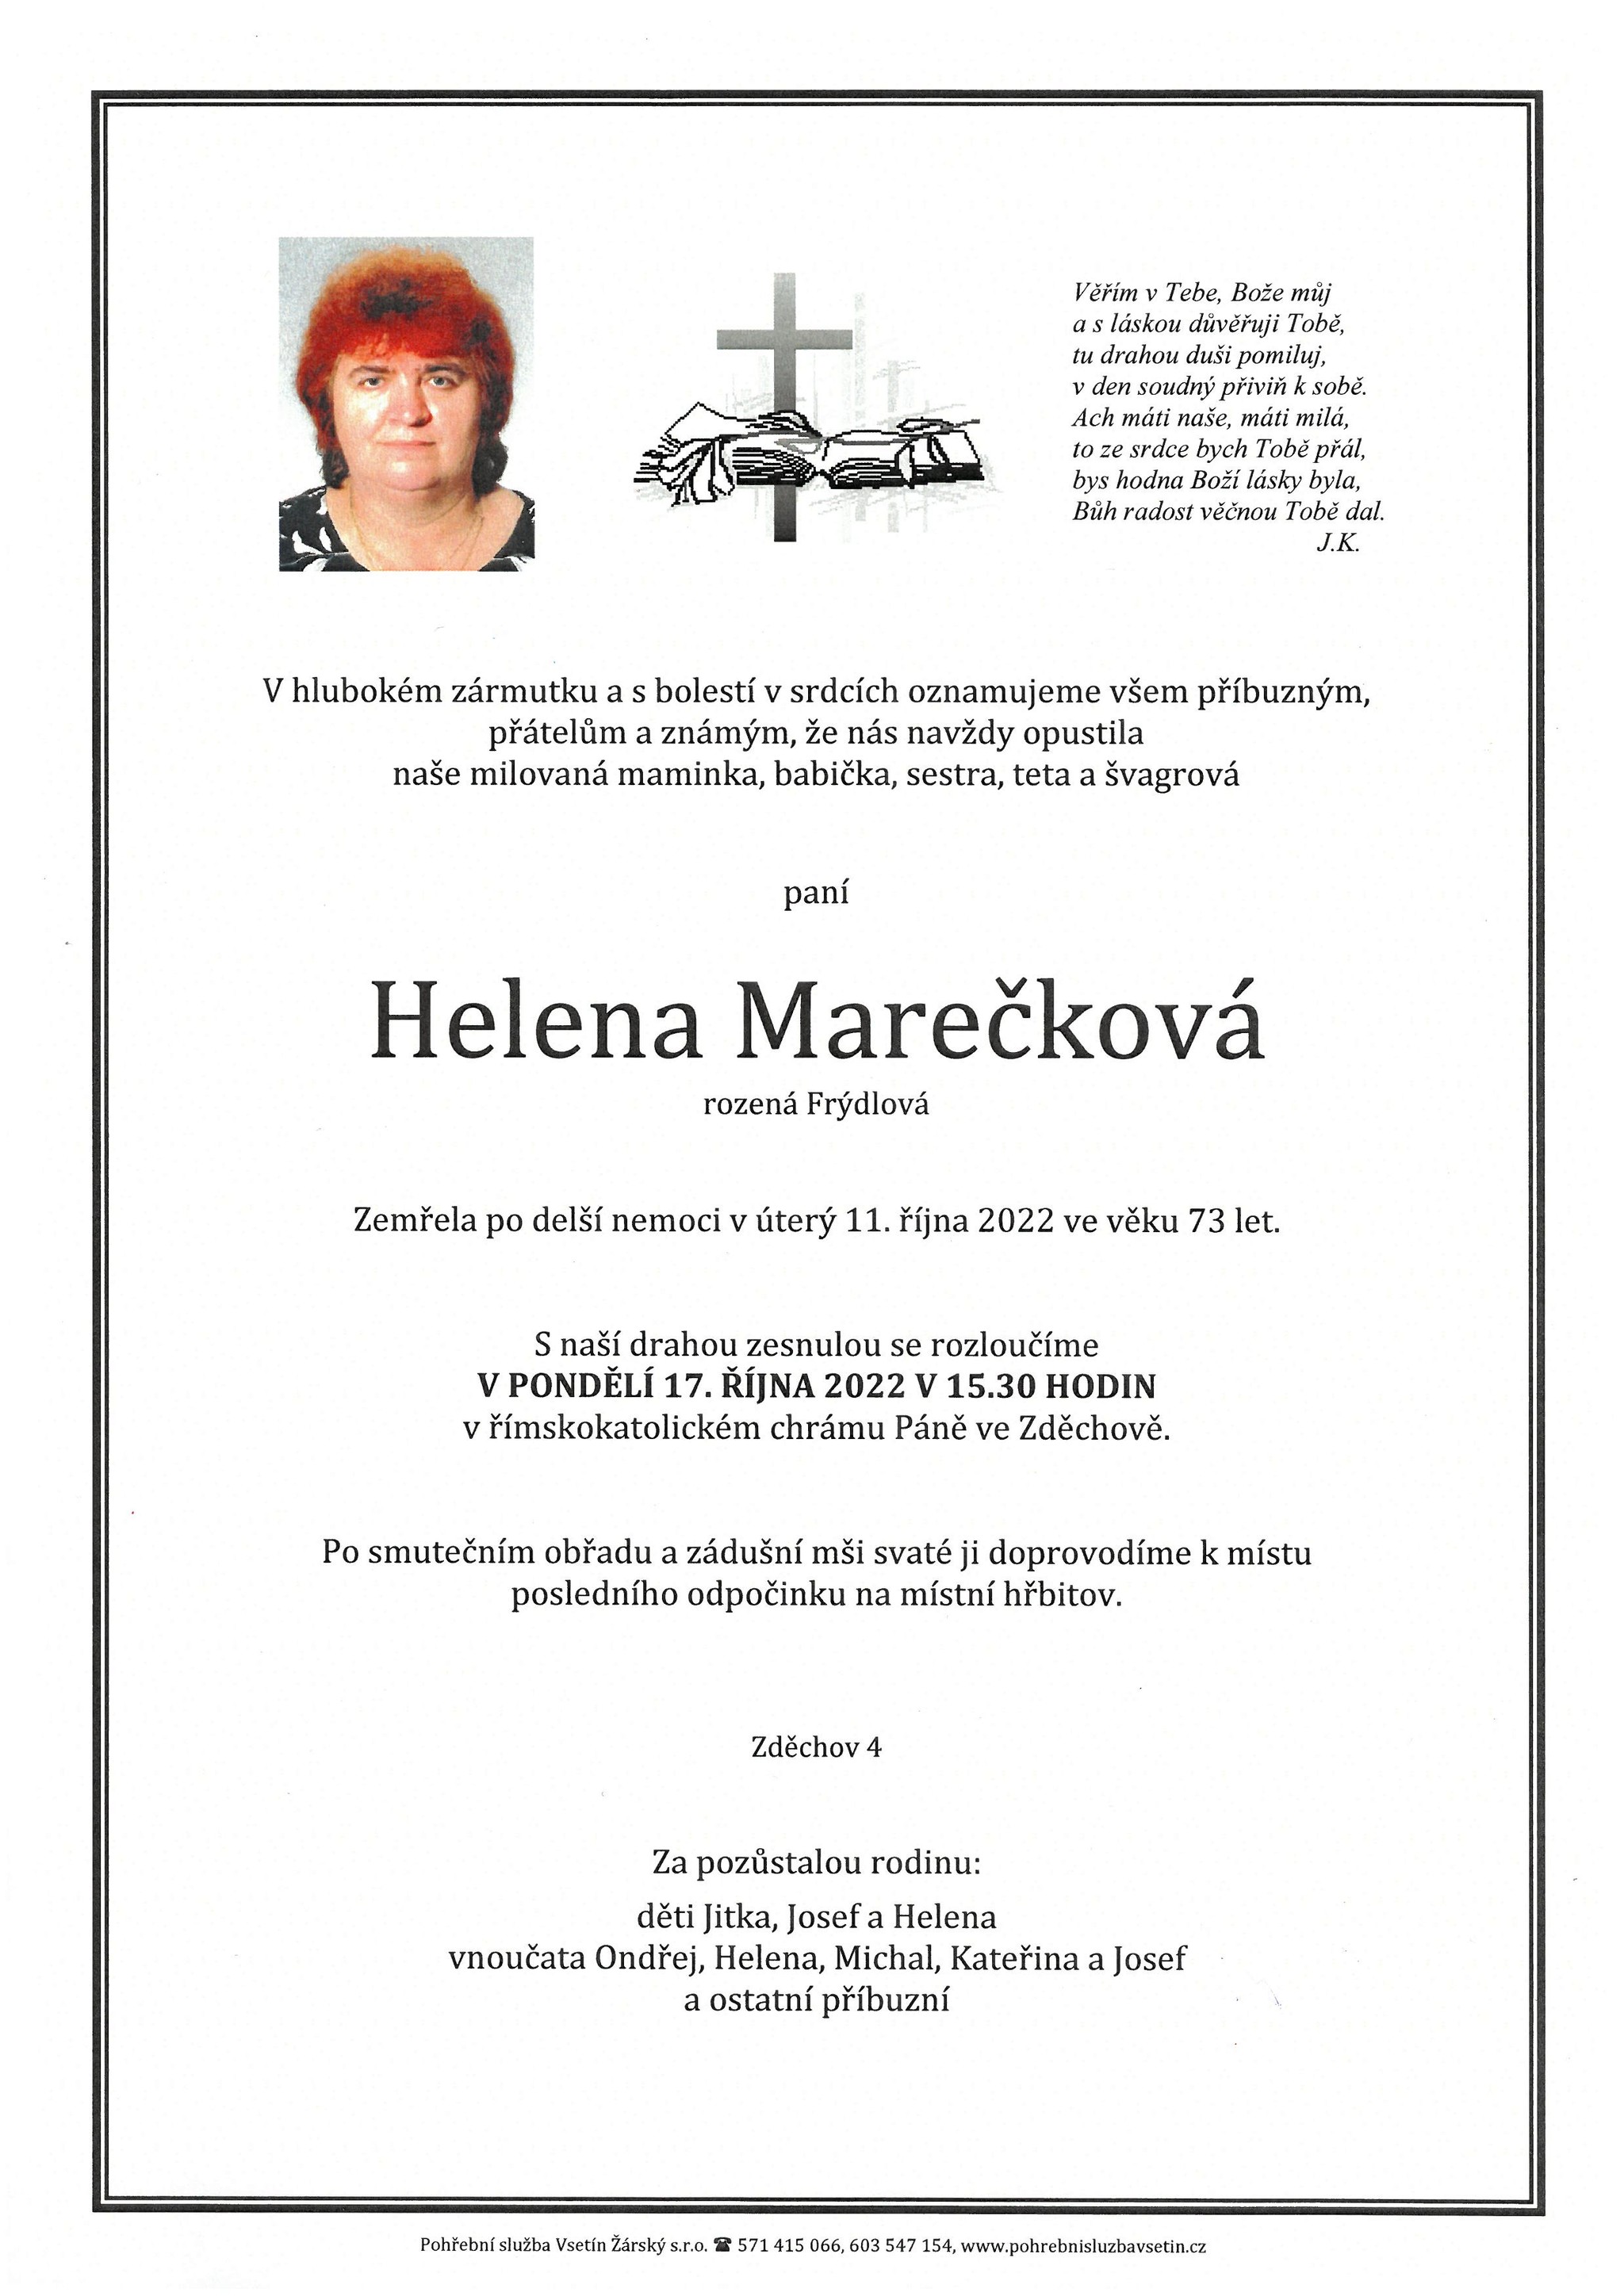 Helena Marečková